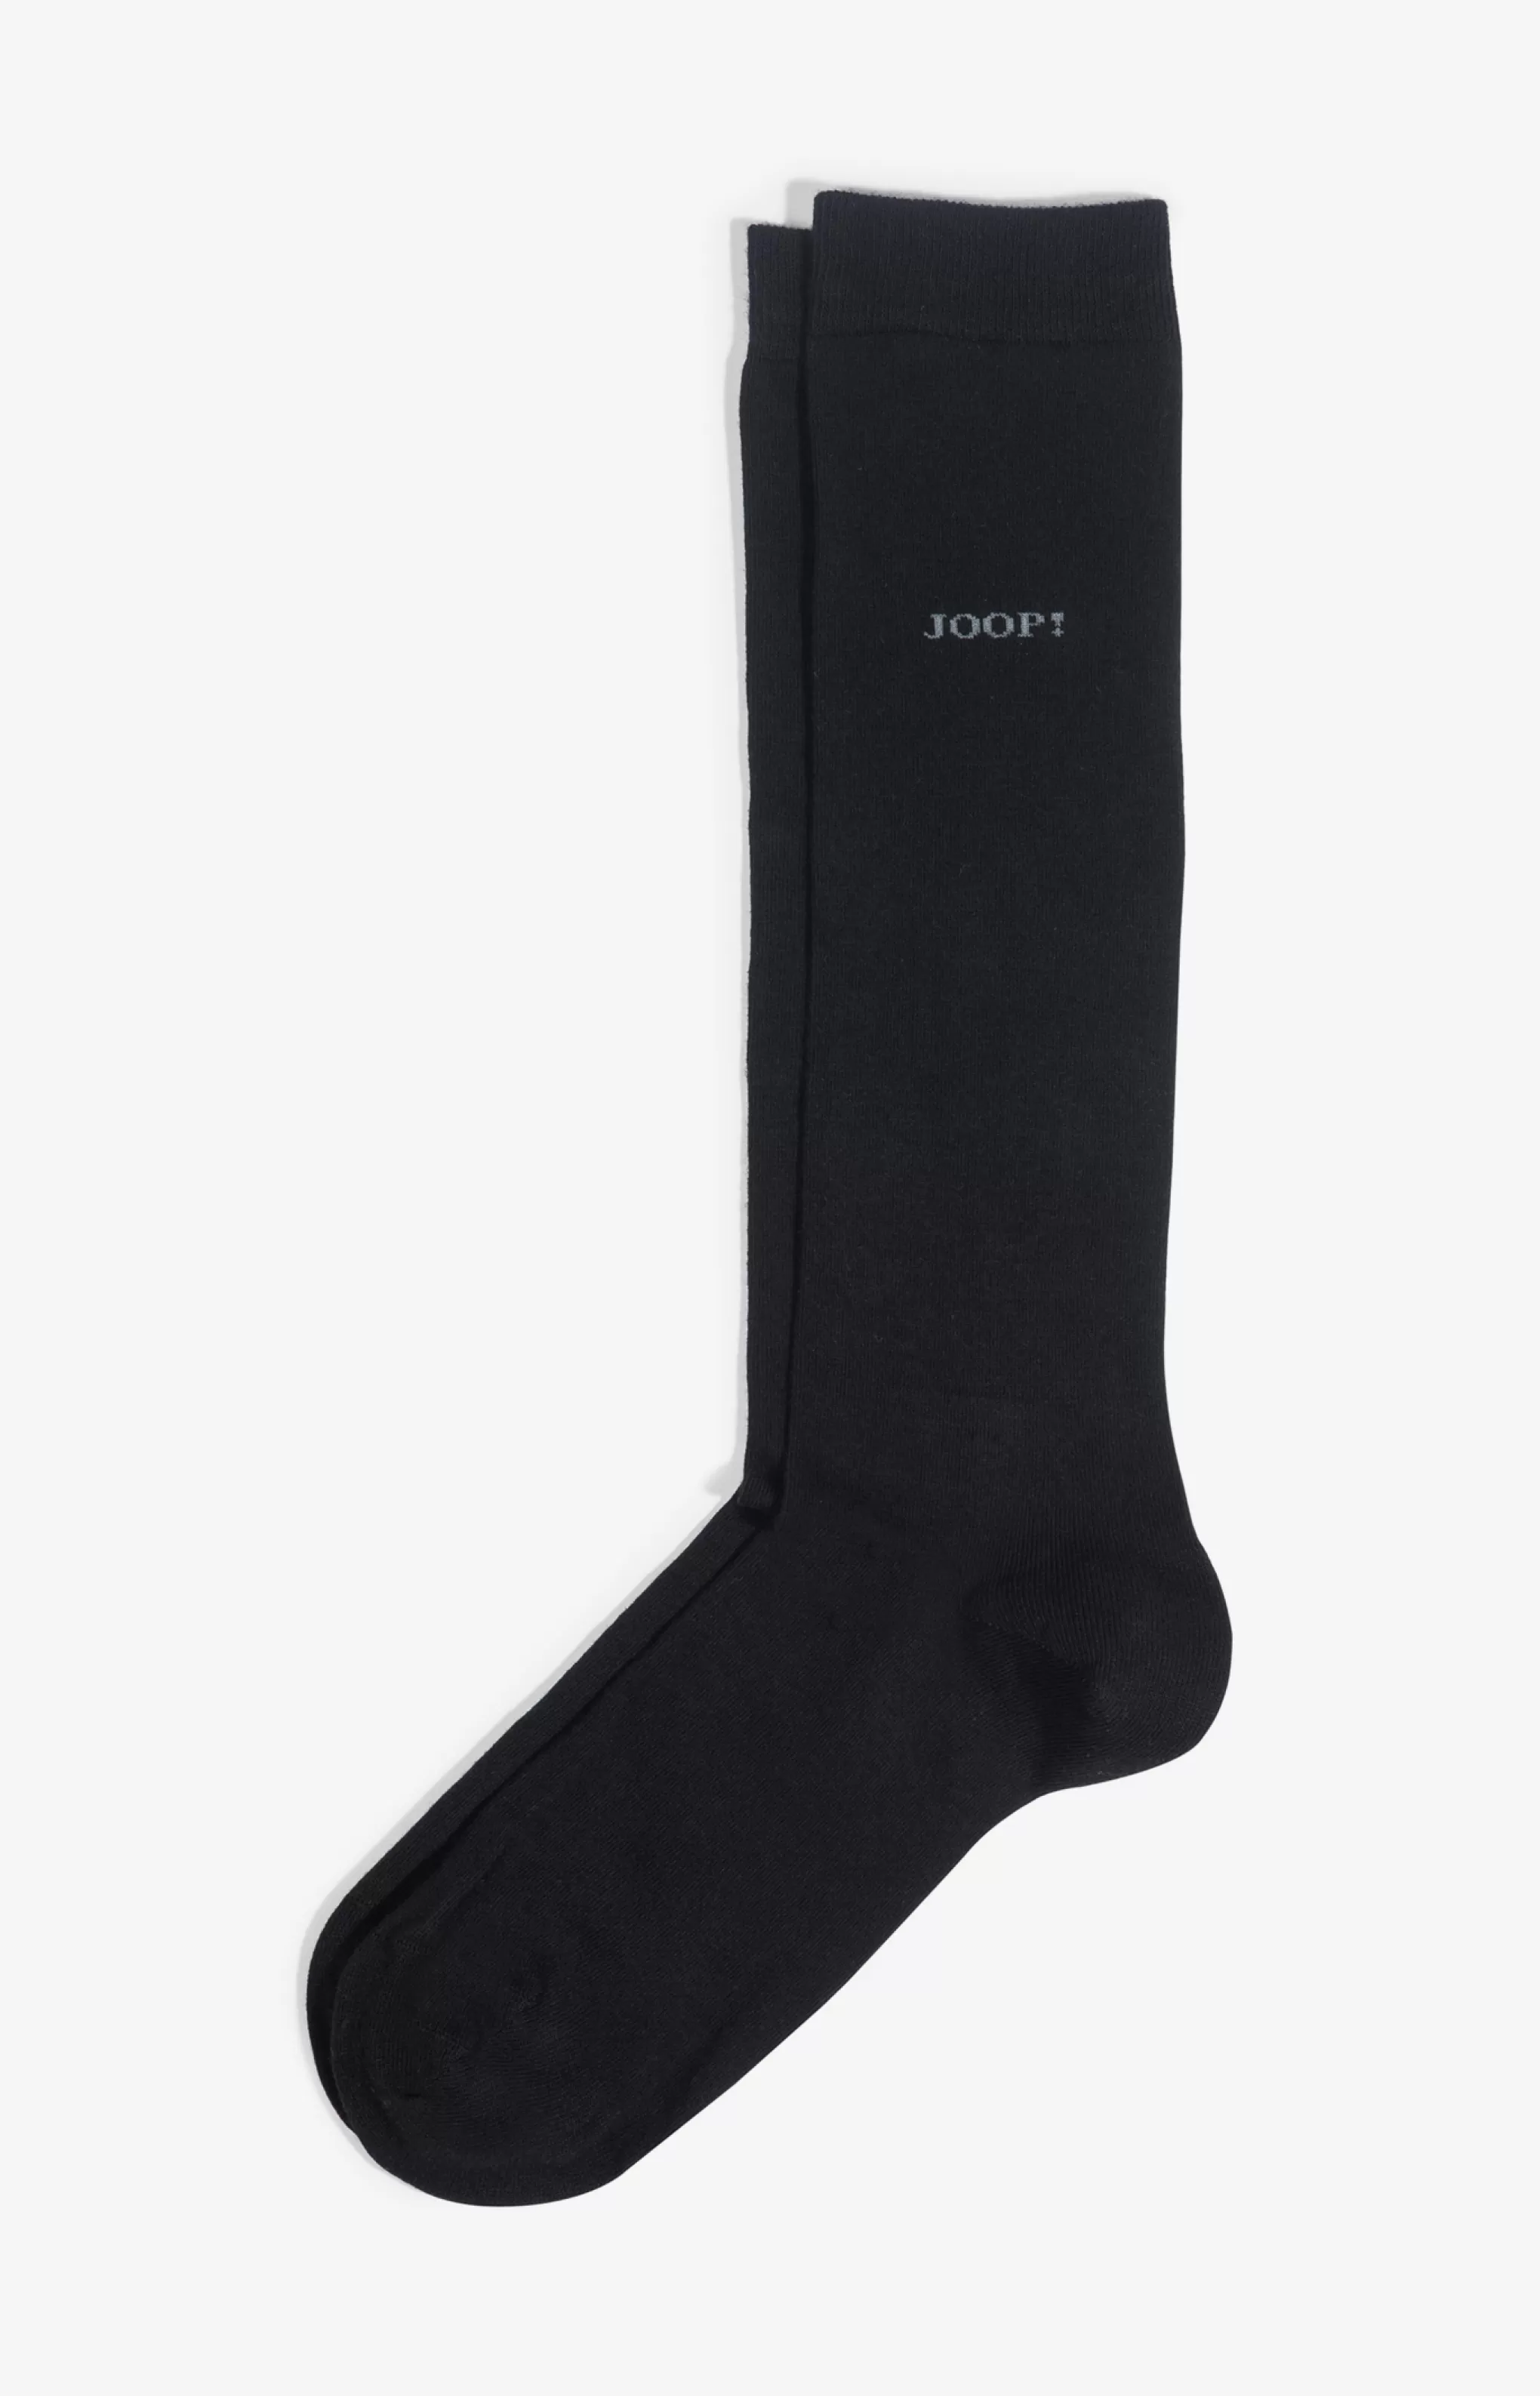 Socks*JOOP Socks Basic Soft Cotton Knee-high Socks in